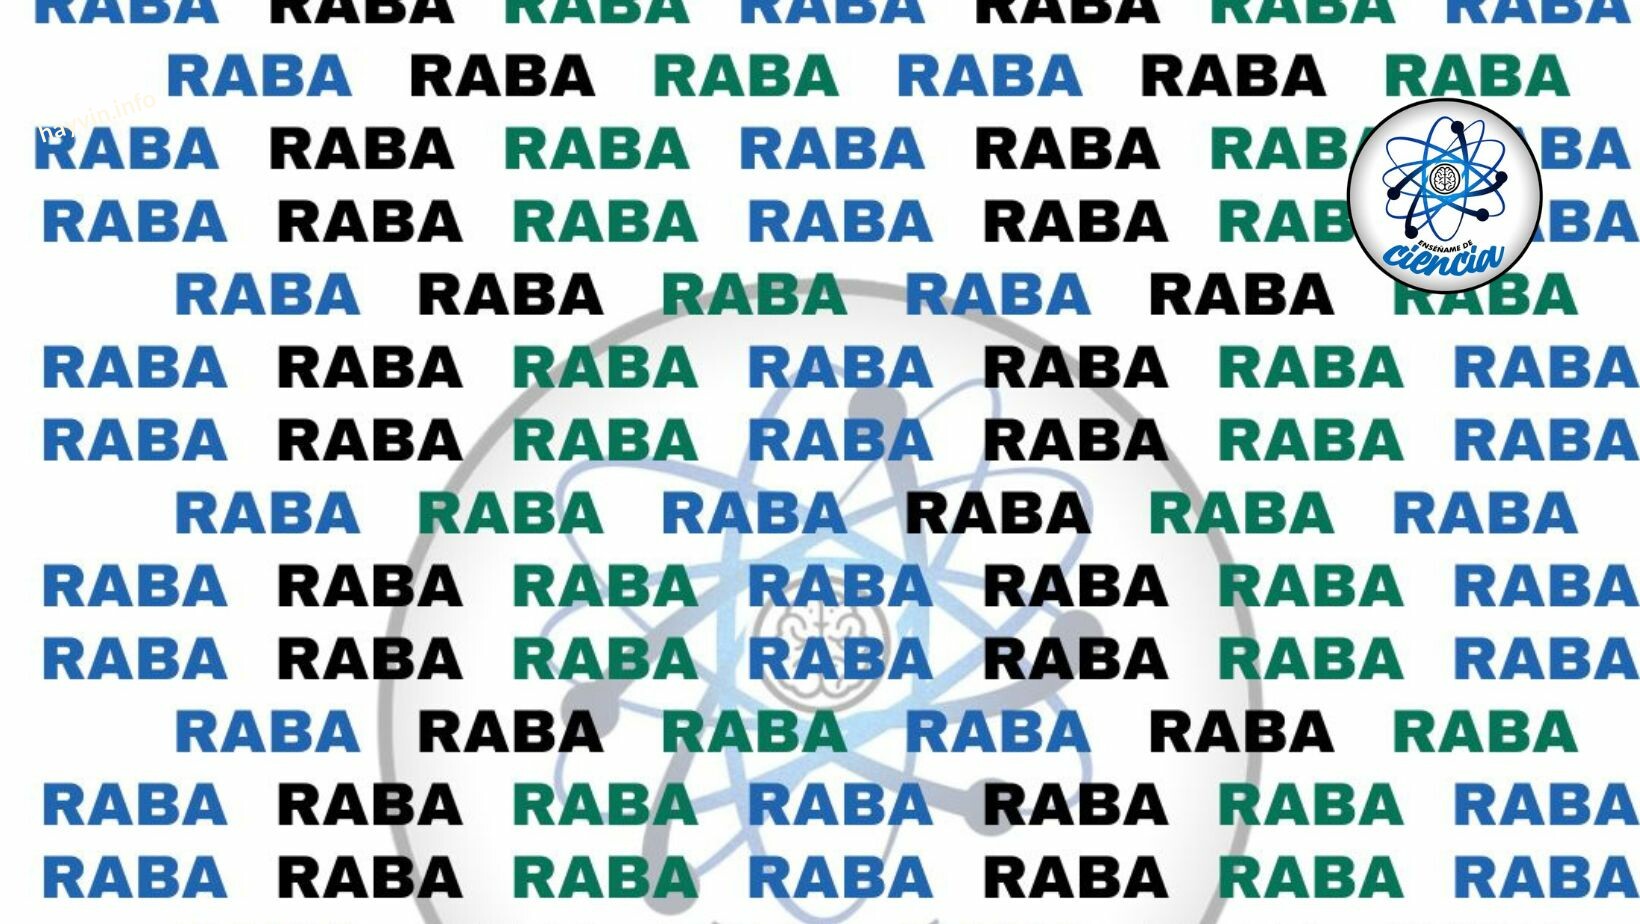 Kvíz: Megtalálod a TREND vizuális rejtvényében a RABA szótól KÜLÖNBÖZŐ szót?